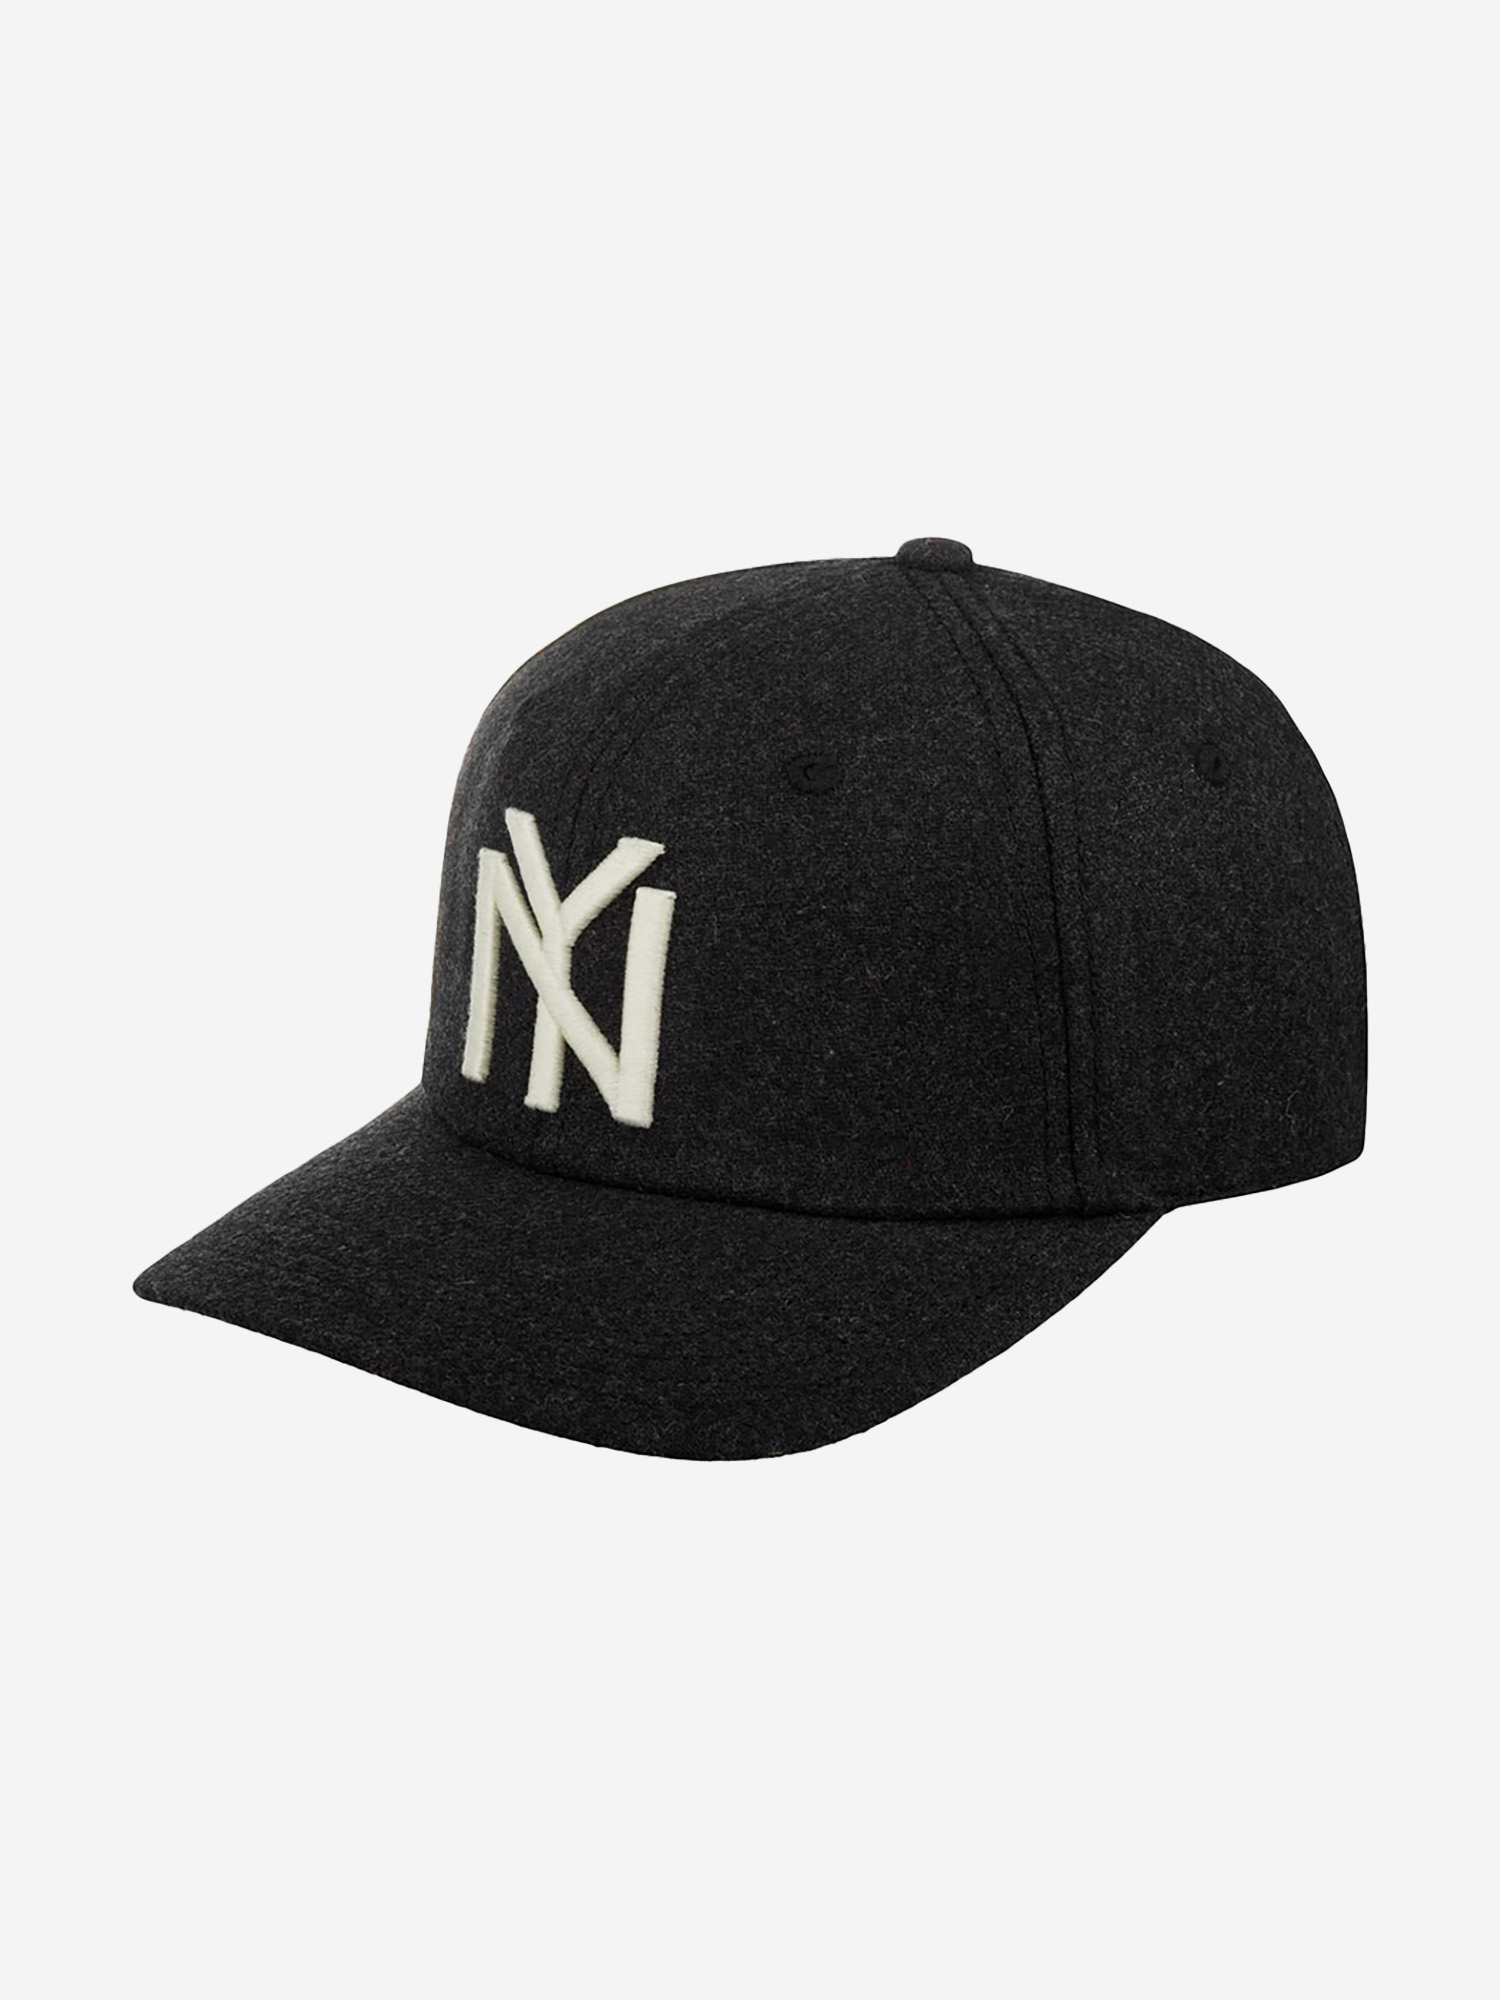 Бейсболка AMERICAN NEEDLE 21005A-NBY New York Black Yankees Archive Legend NL (черный), Черный new york s photo league 1936 1951